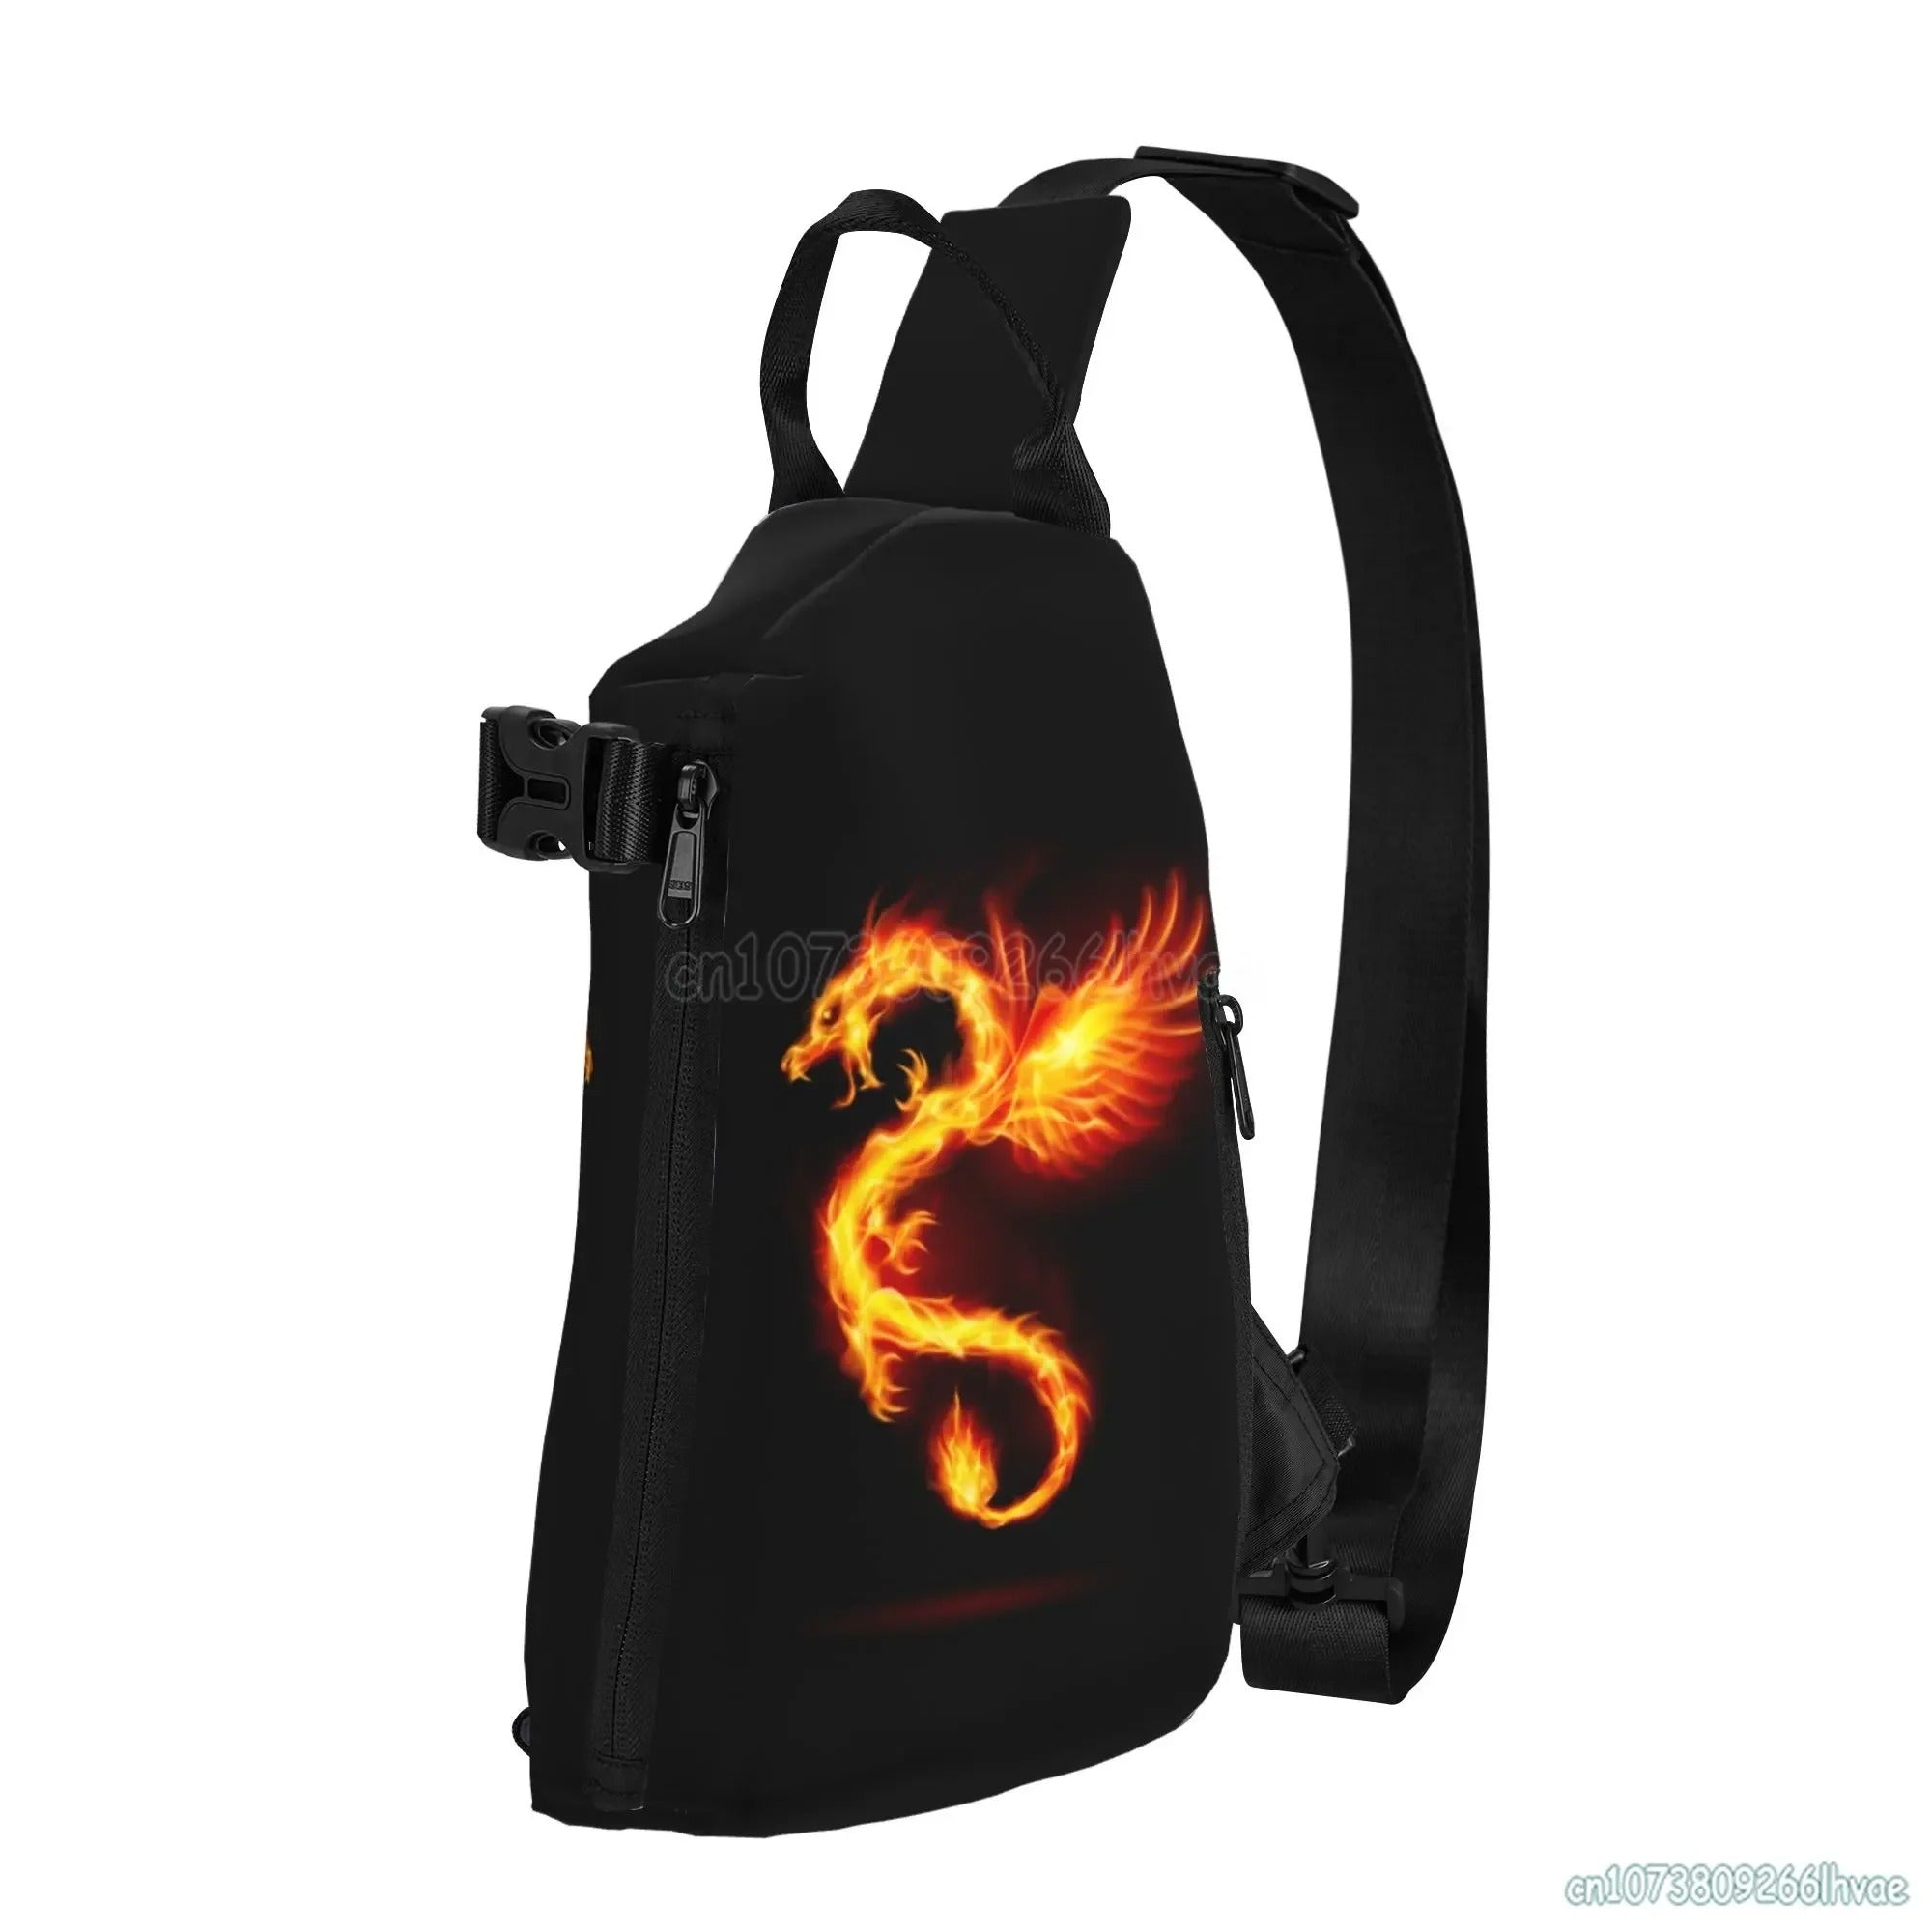 Dragon Head Backpack - Black